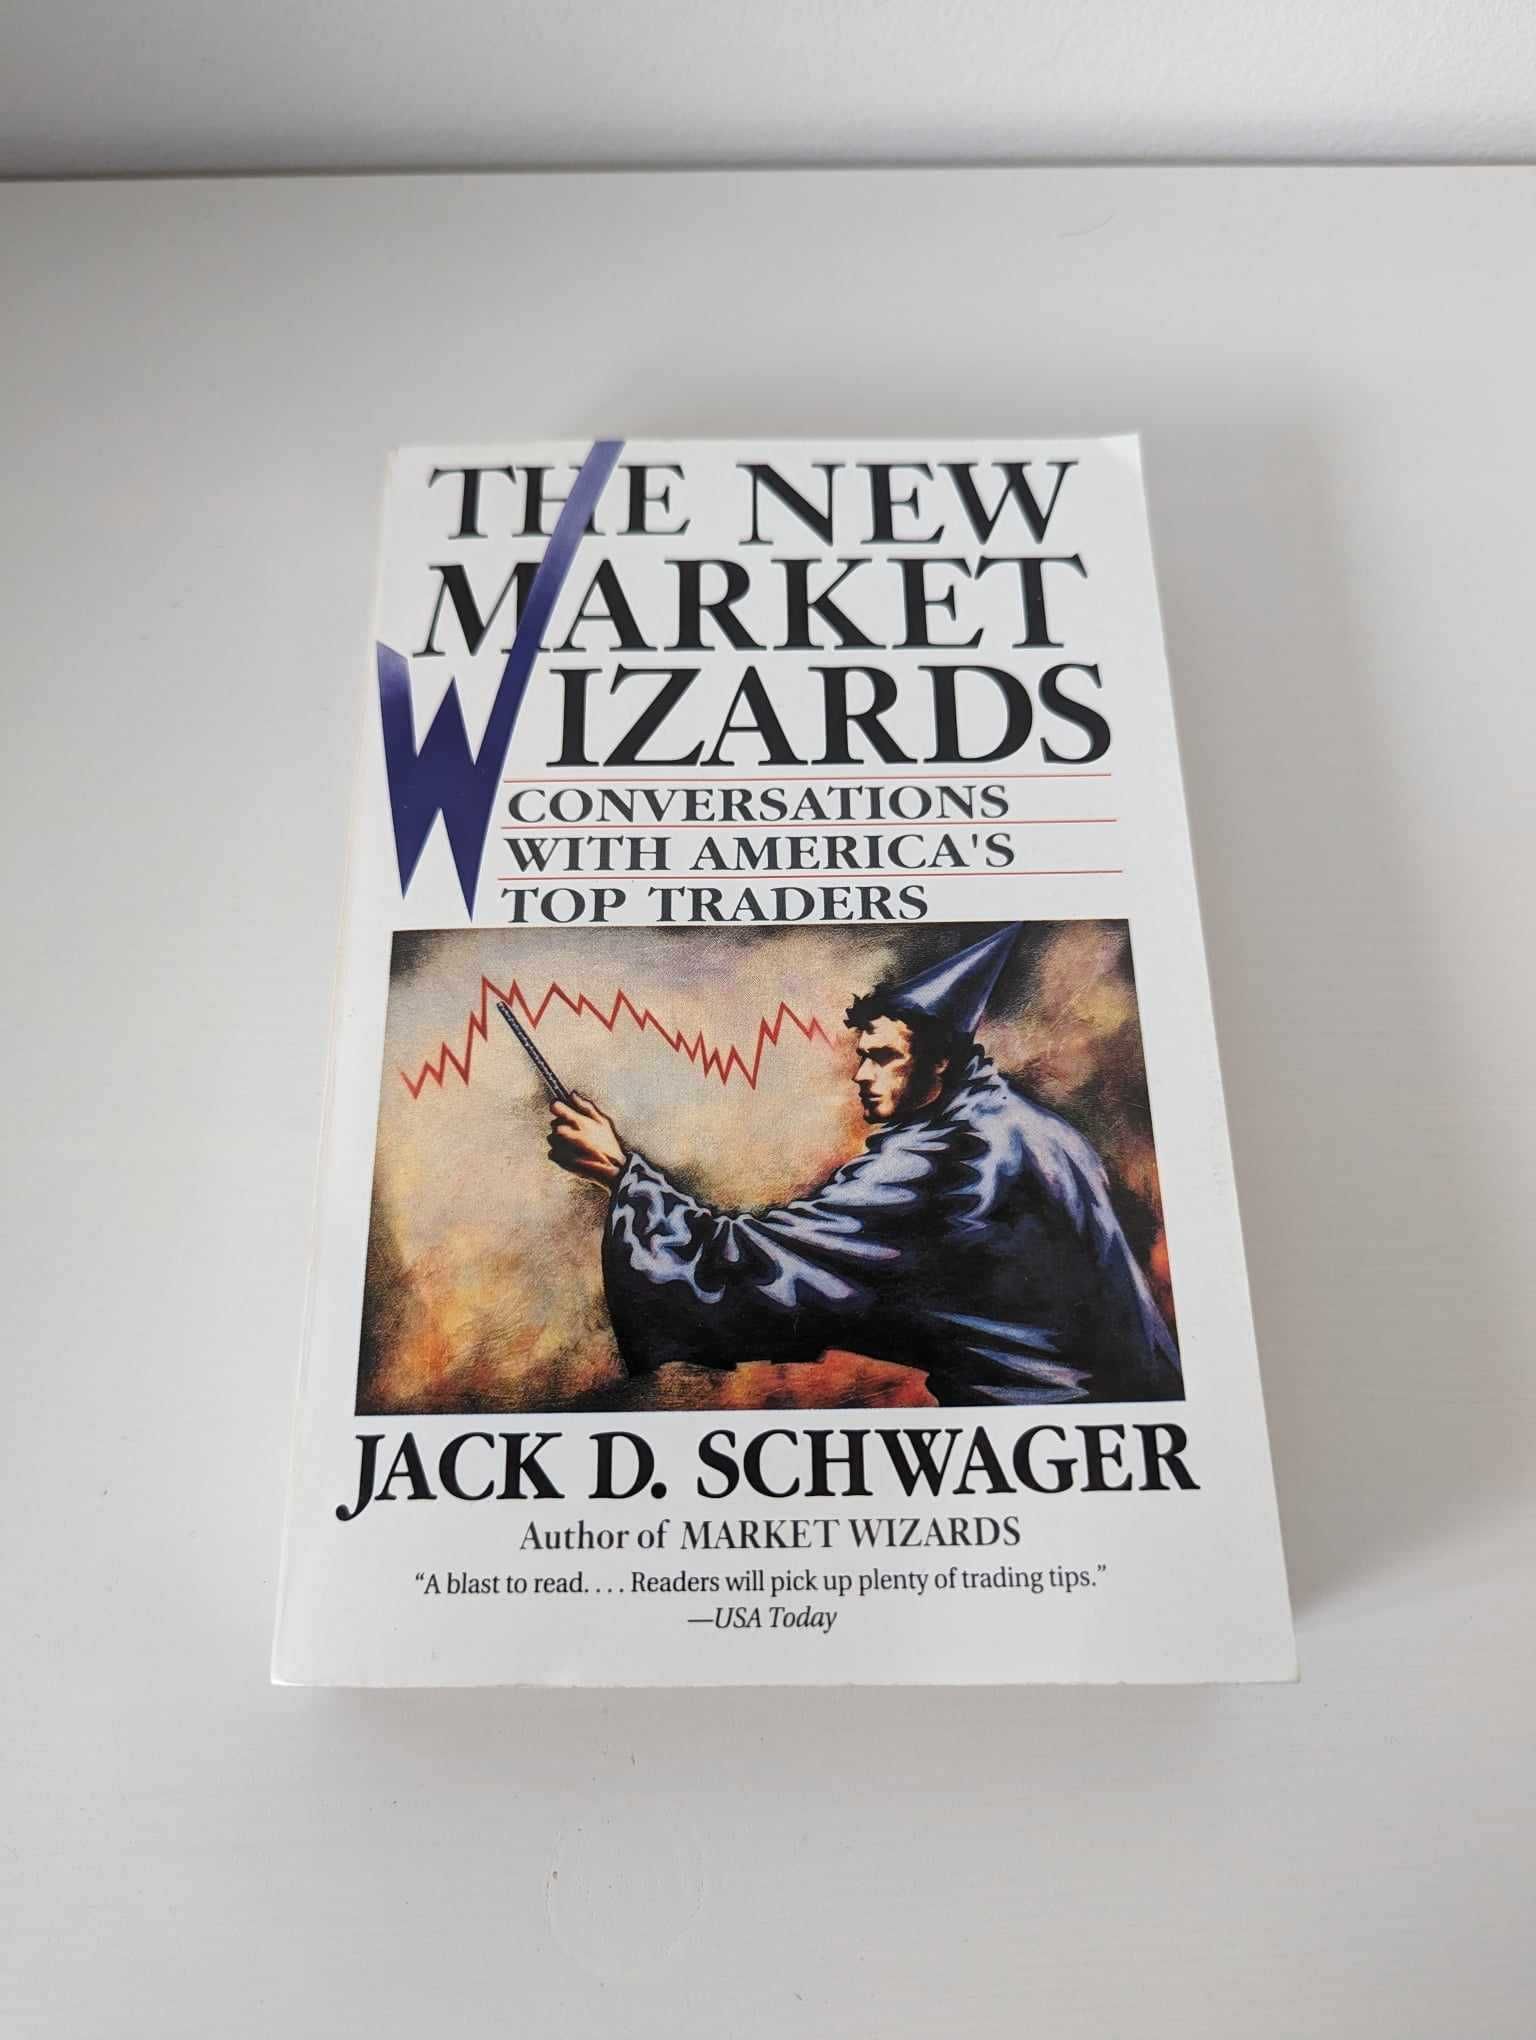 Książka "The New Market Wizards" Jack D. Schwager po angielsku